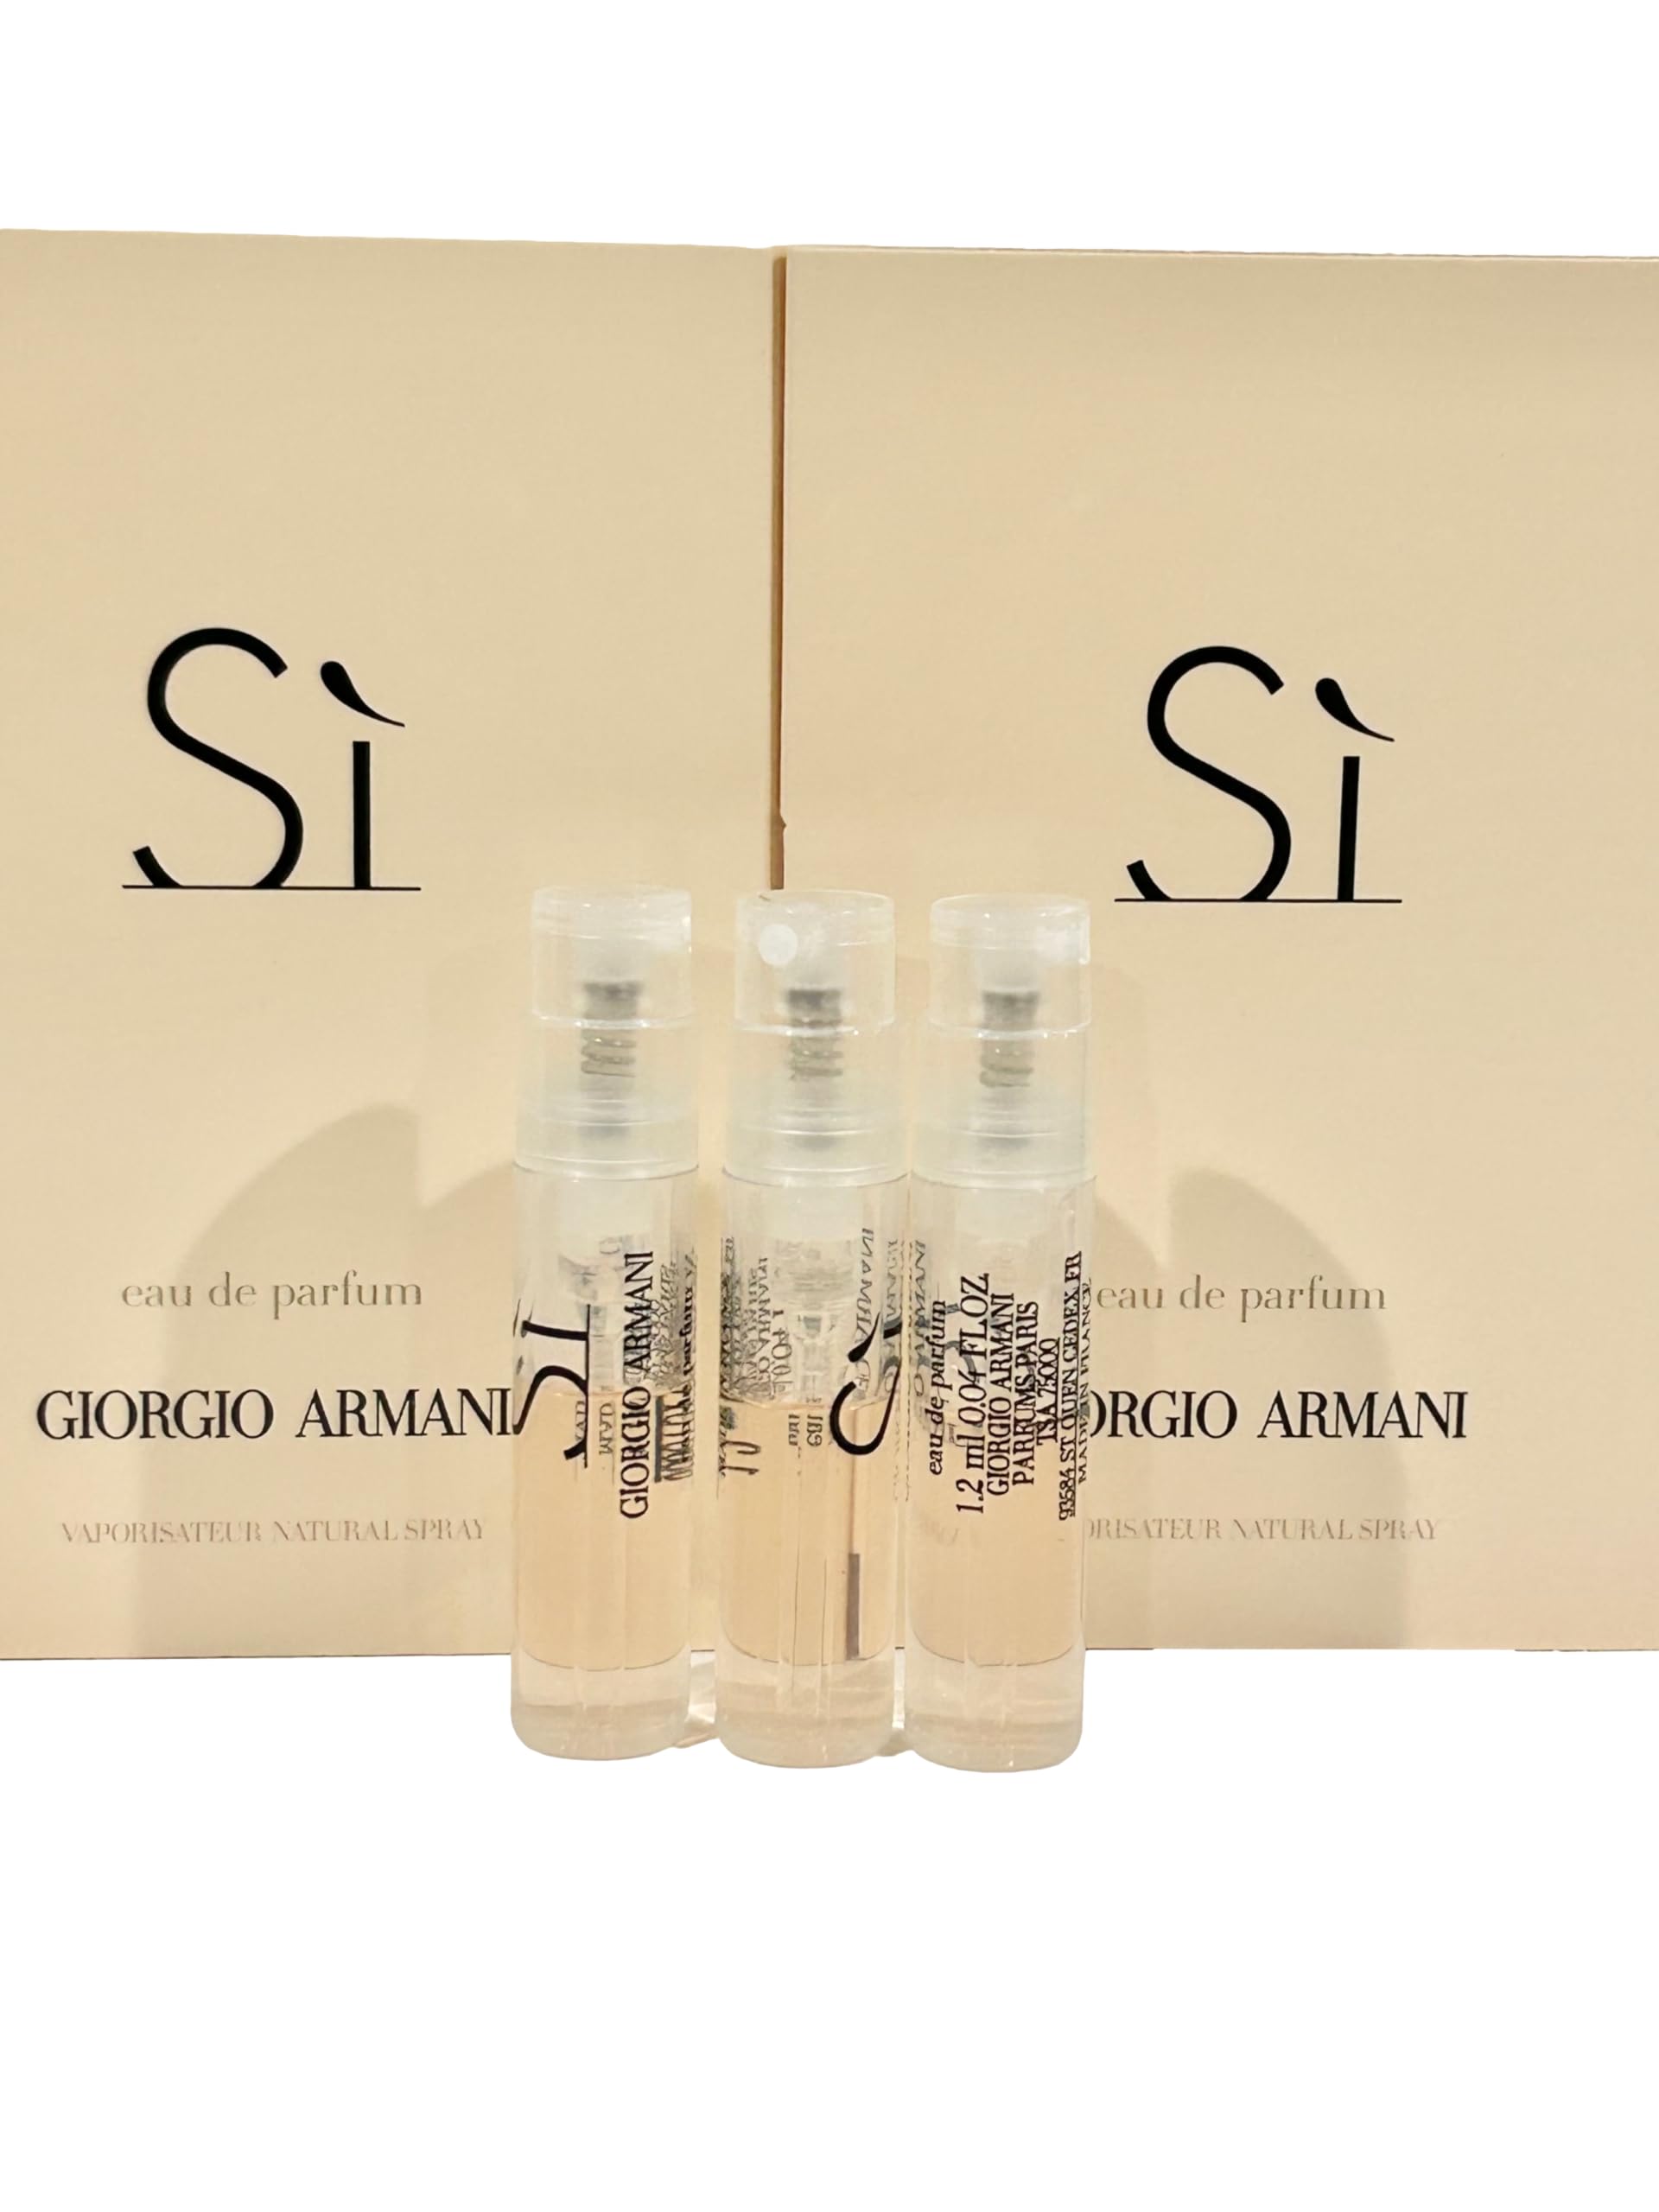 GIORGIO ARMANI Si EDP Sample Perfume Women Spray 1.2 ml / 0.04 oz - set of 3